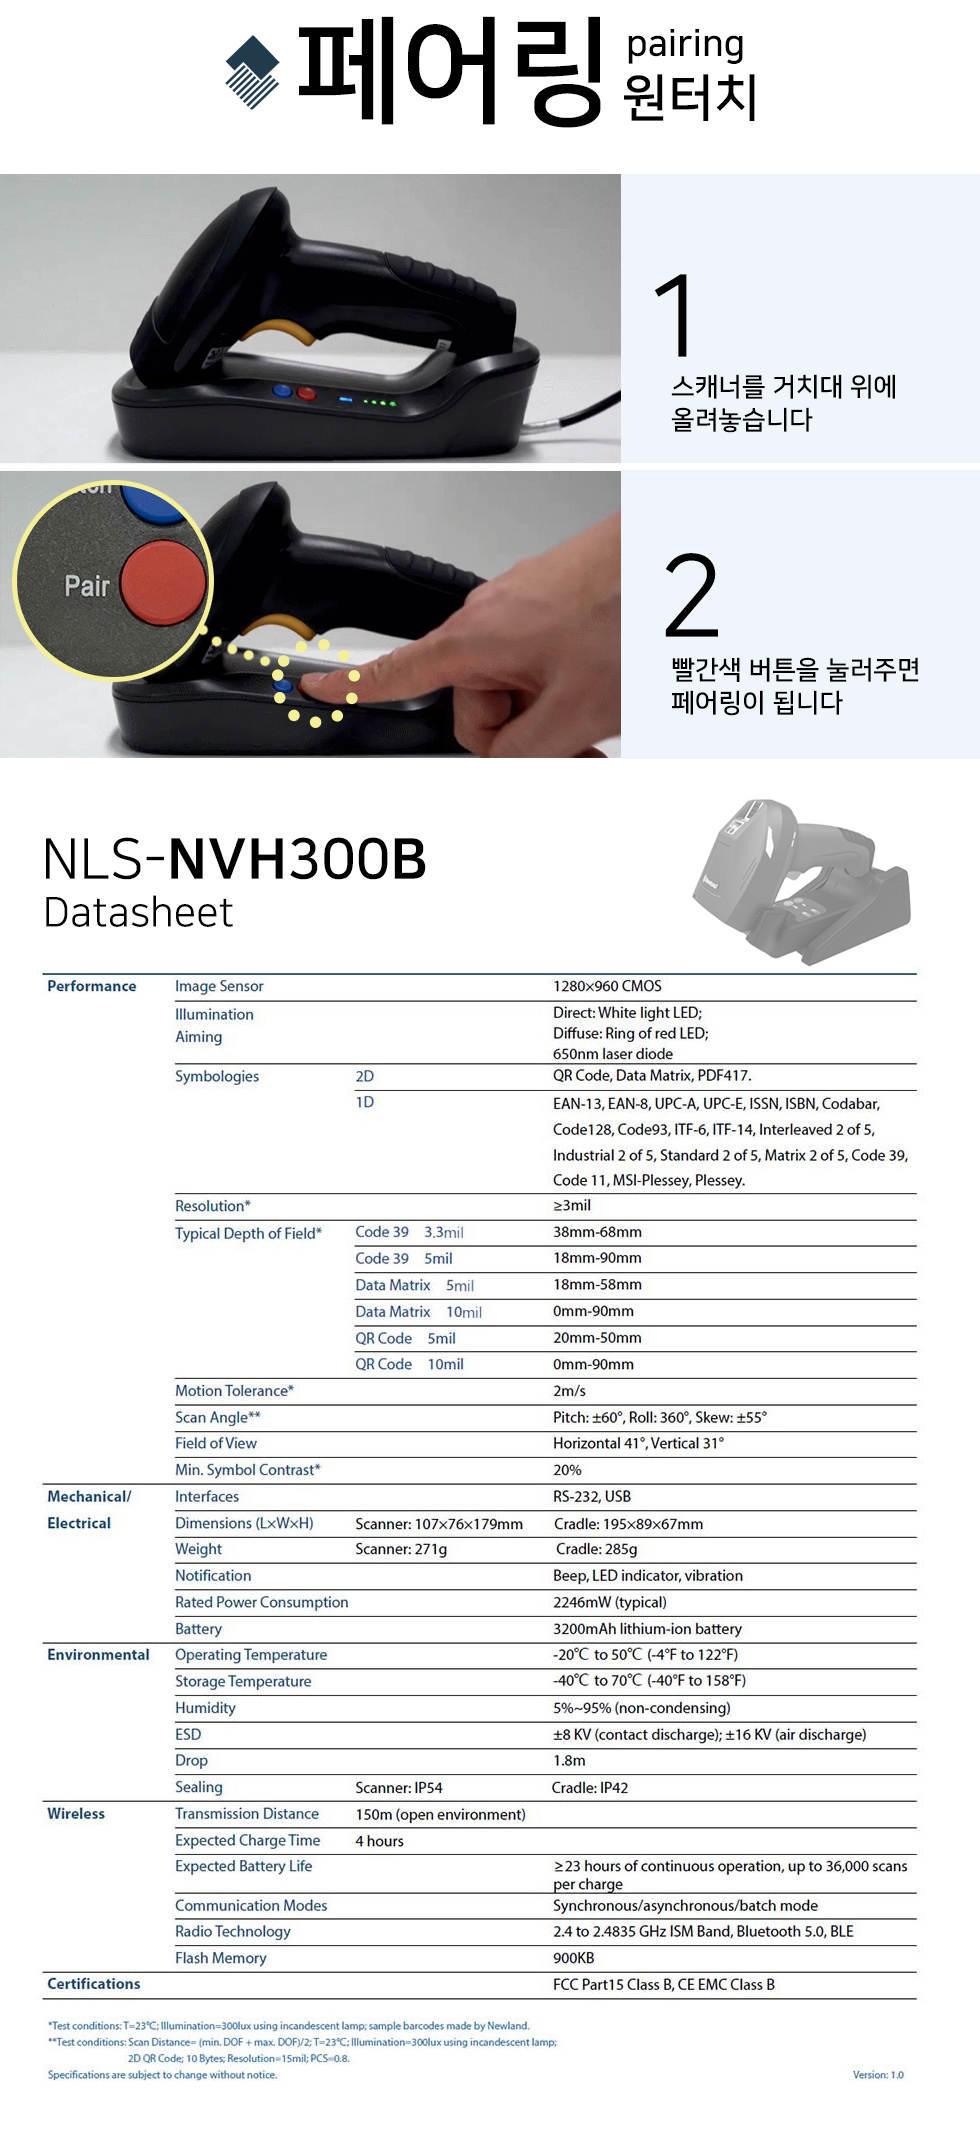 NLS-NVH300B_02_180858.jpg